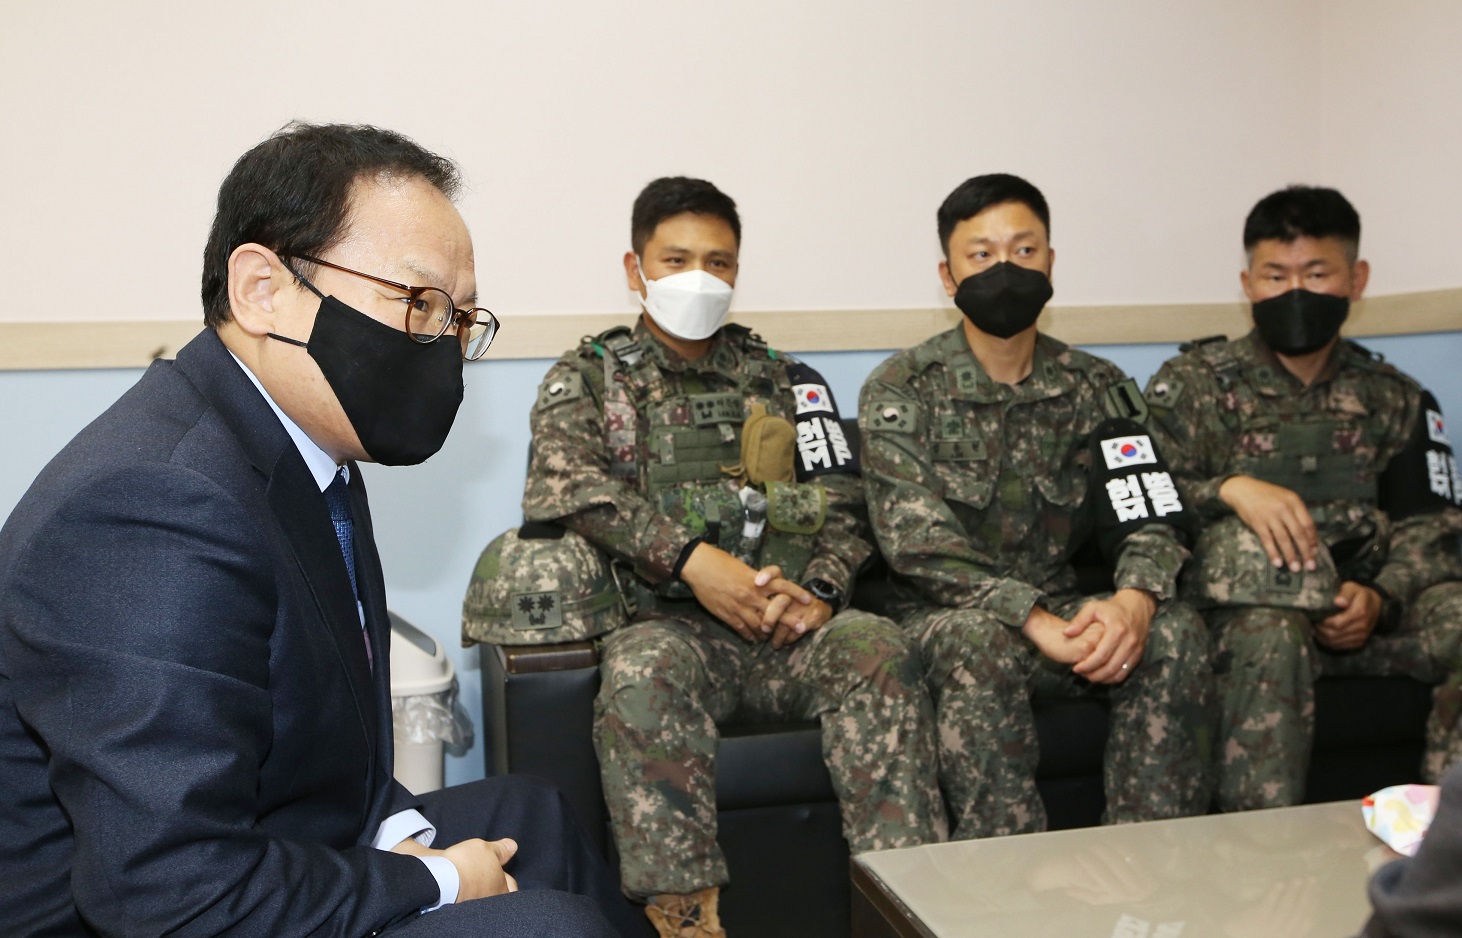 김승호 인사혁신처장이 10월13일 육군 제1보병사단을 방문, 장병들과 처우와 후생복지 등 근무여건 등에 대한 의견을 나누고 있는 모습